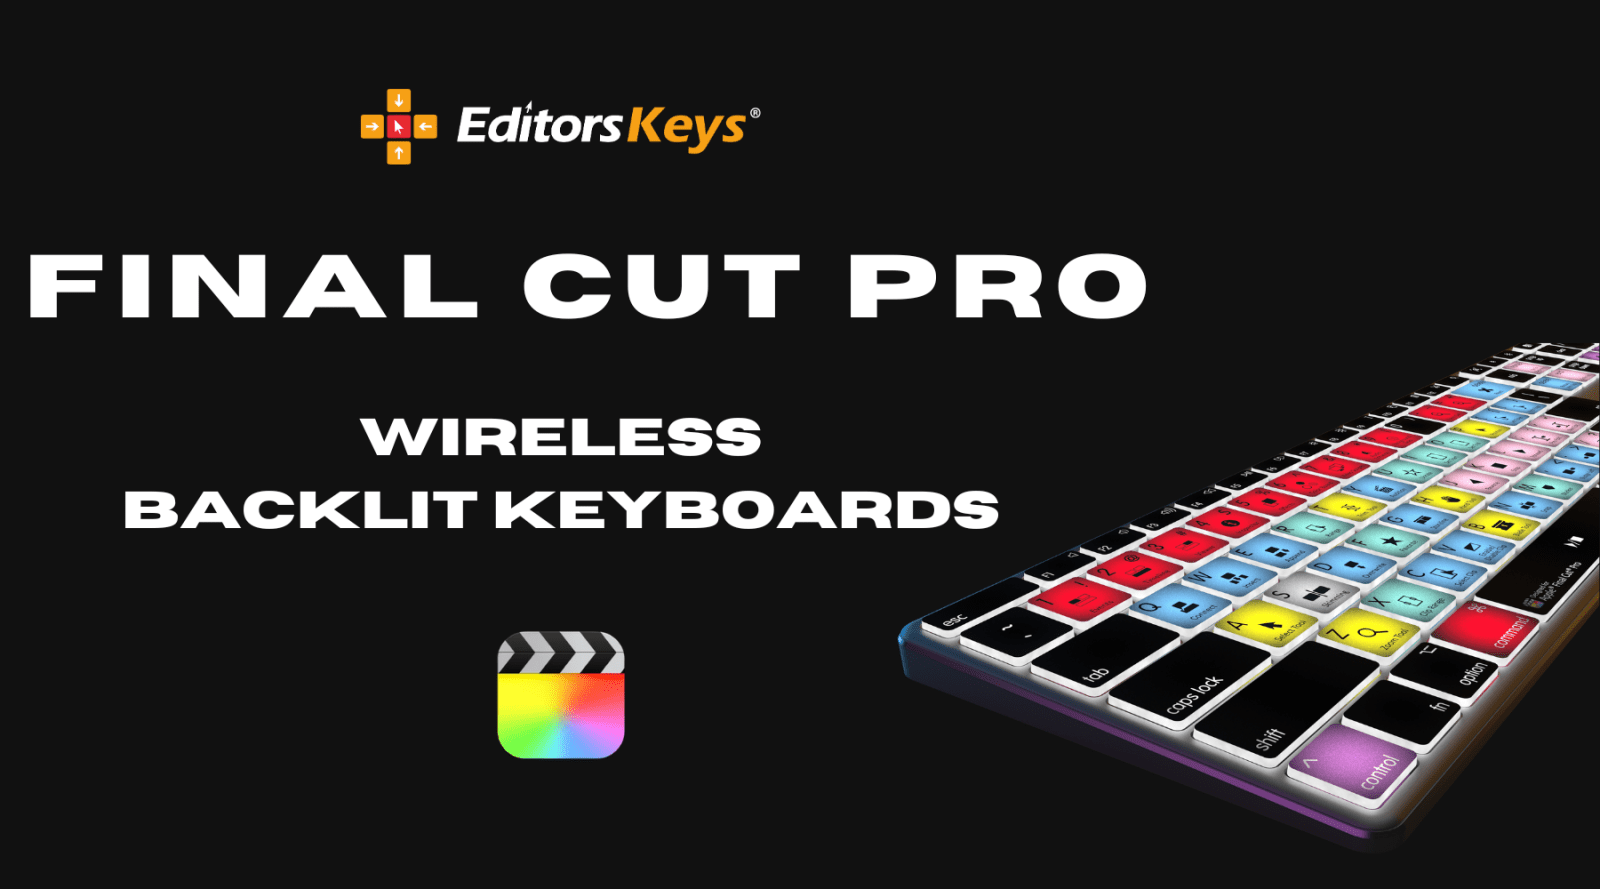 Editors Keys Wireless Backlit Keyboard for Final Cut Pro - Editors Keys